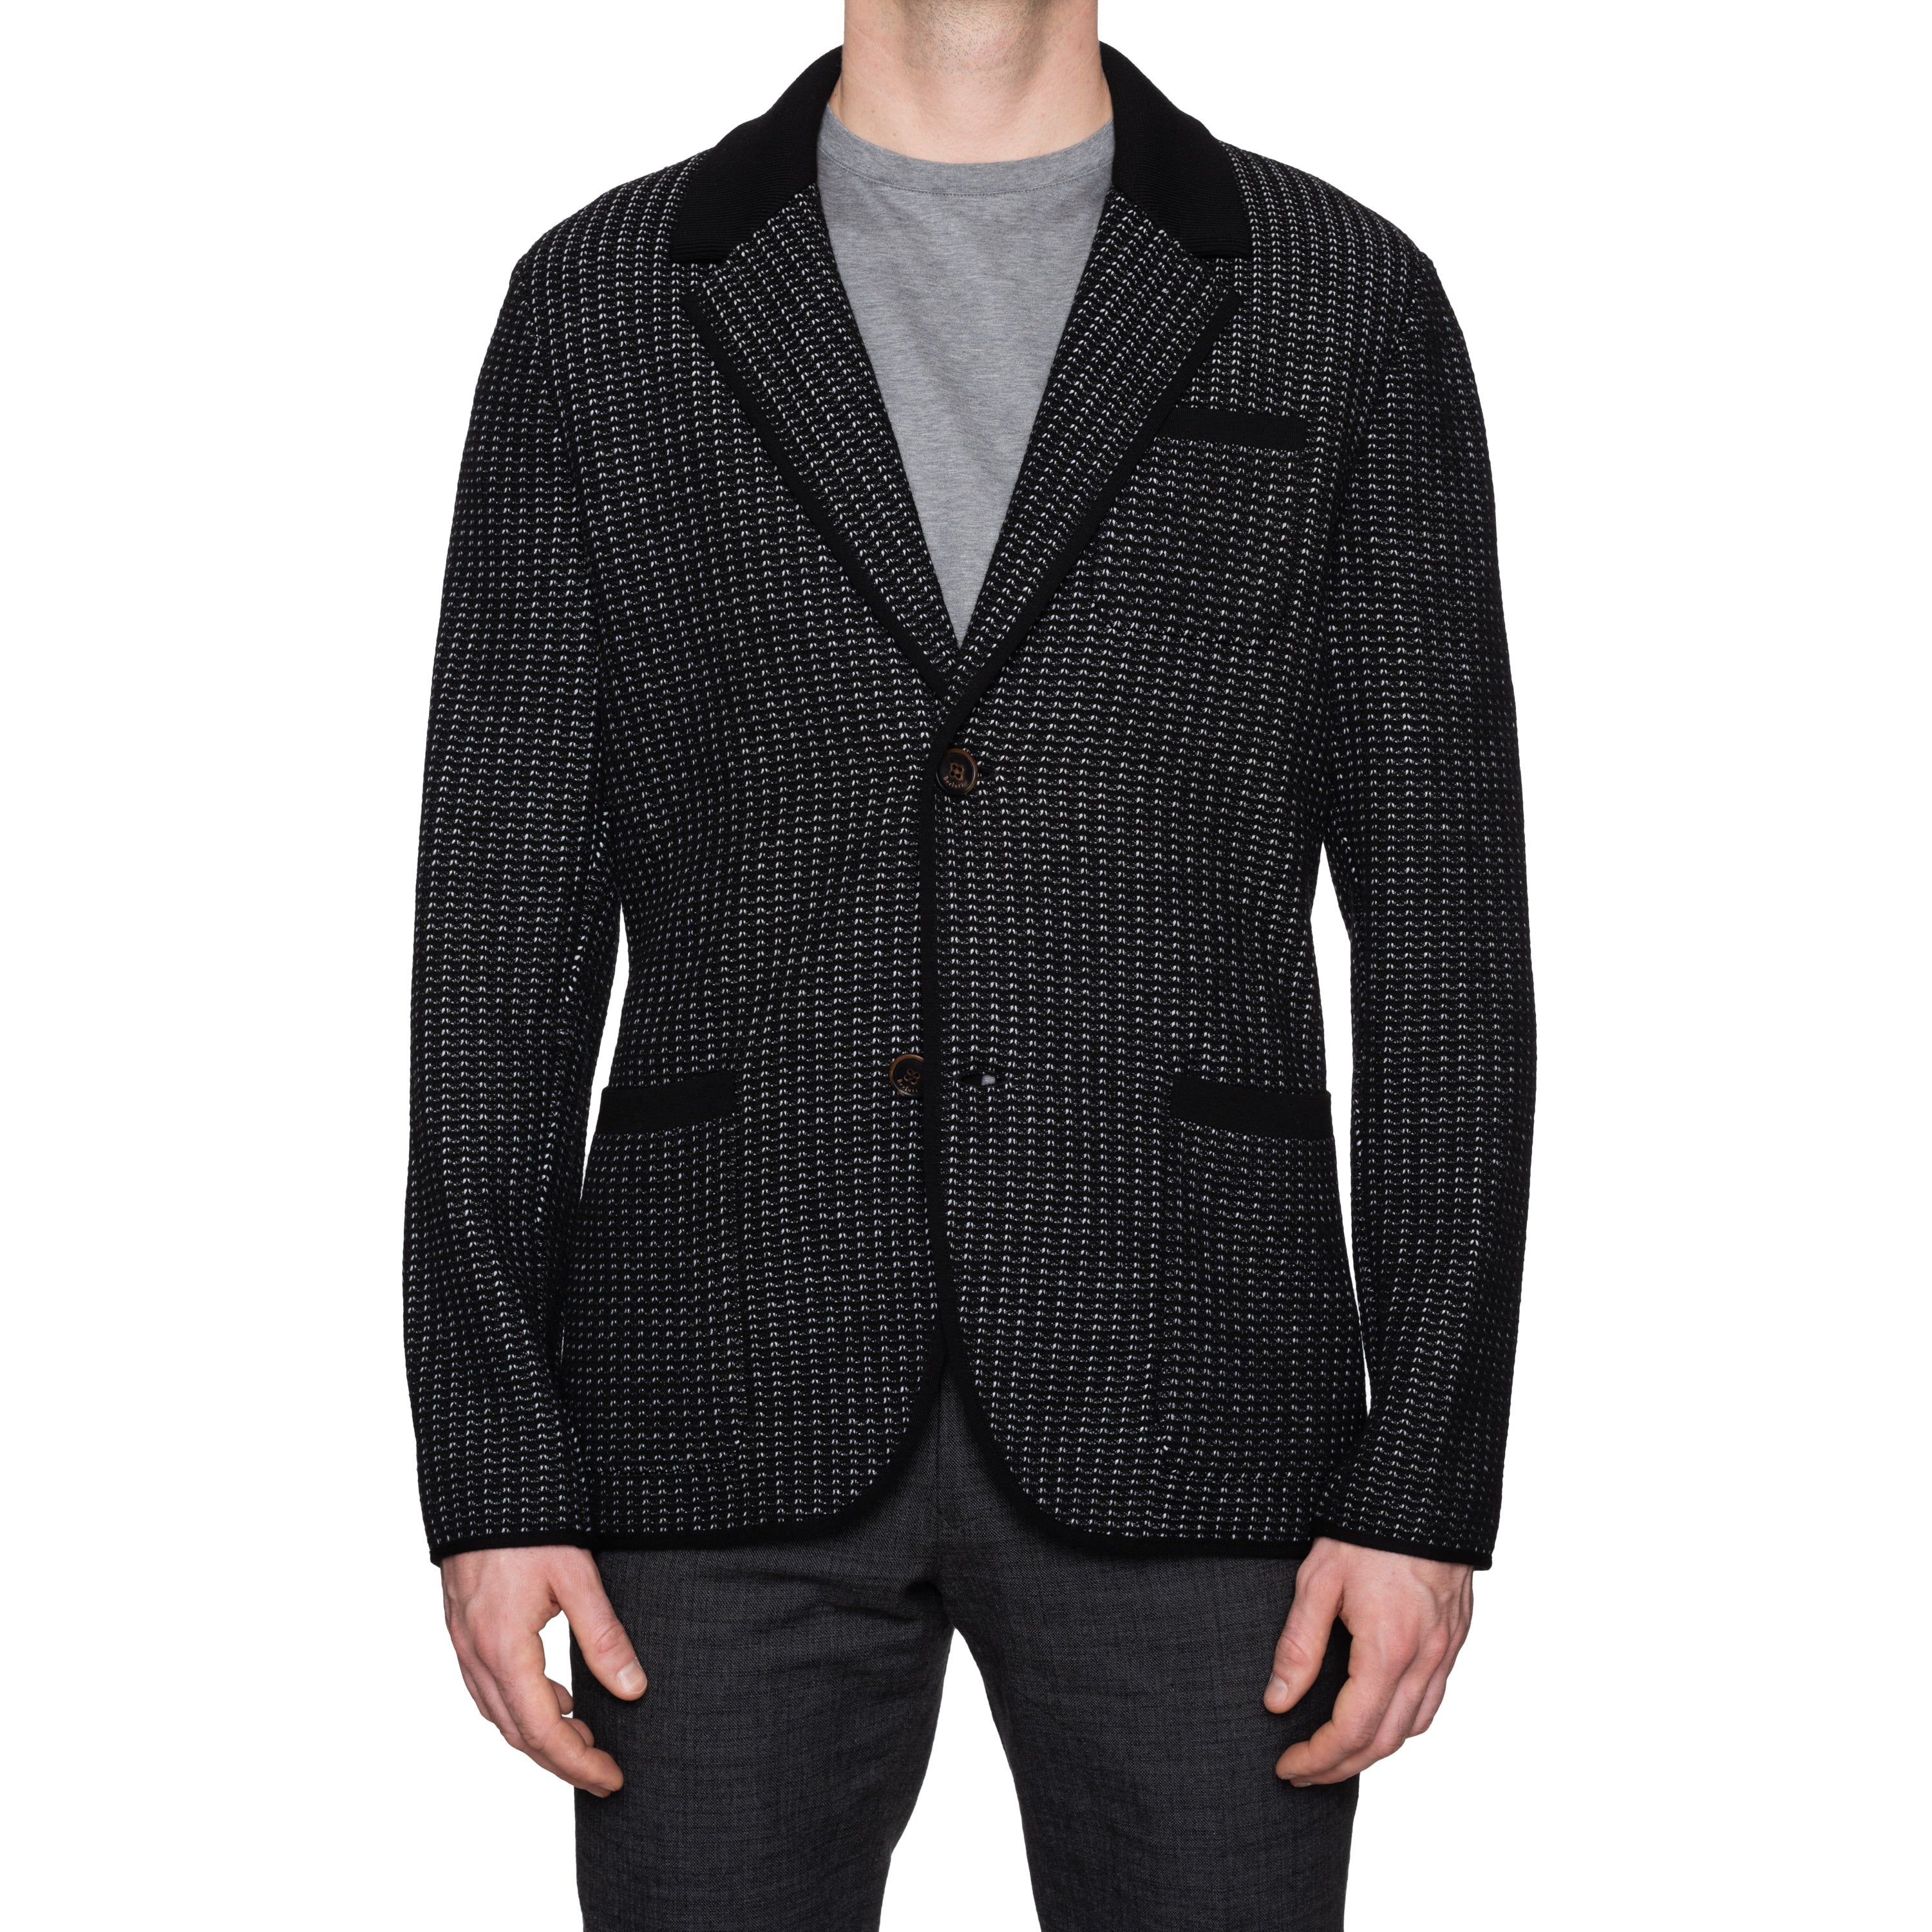 Sweater BERLUTI US Paris Cardigan Wool NEW Knitted Black Blazer 50 EU